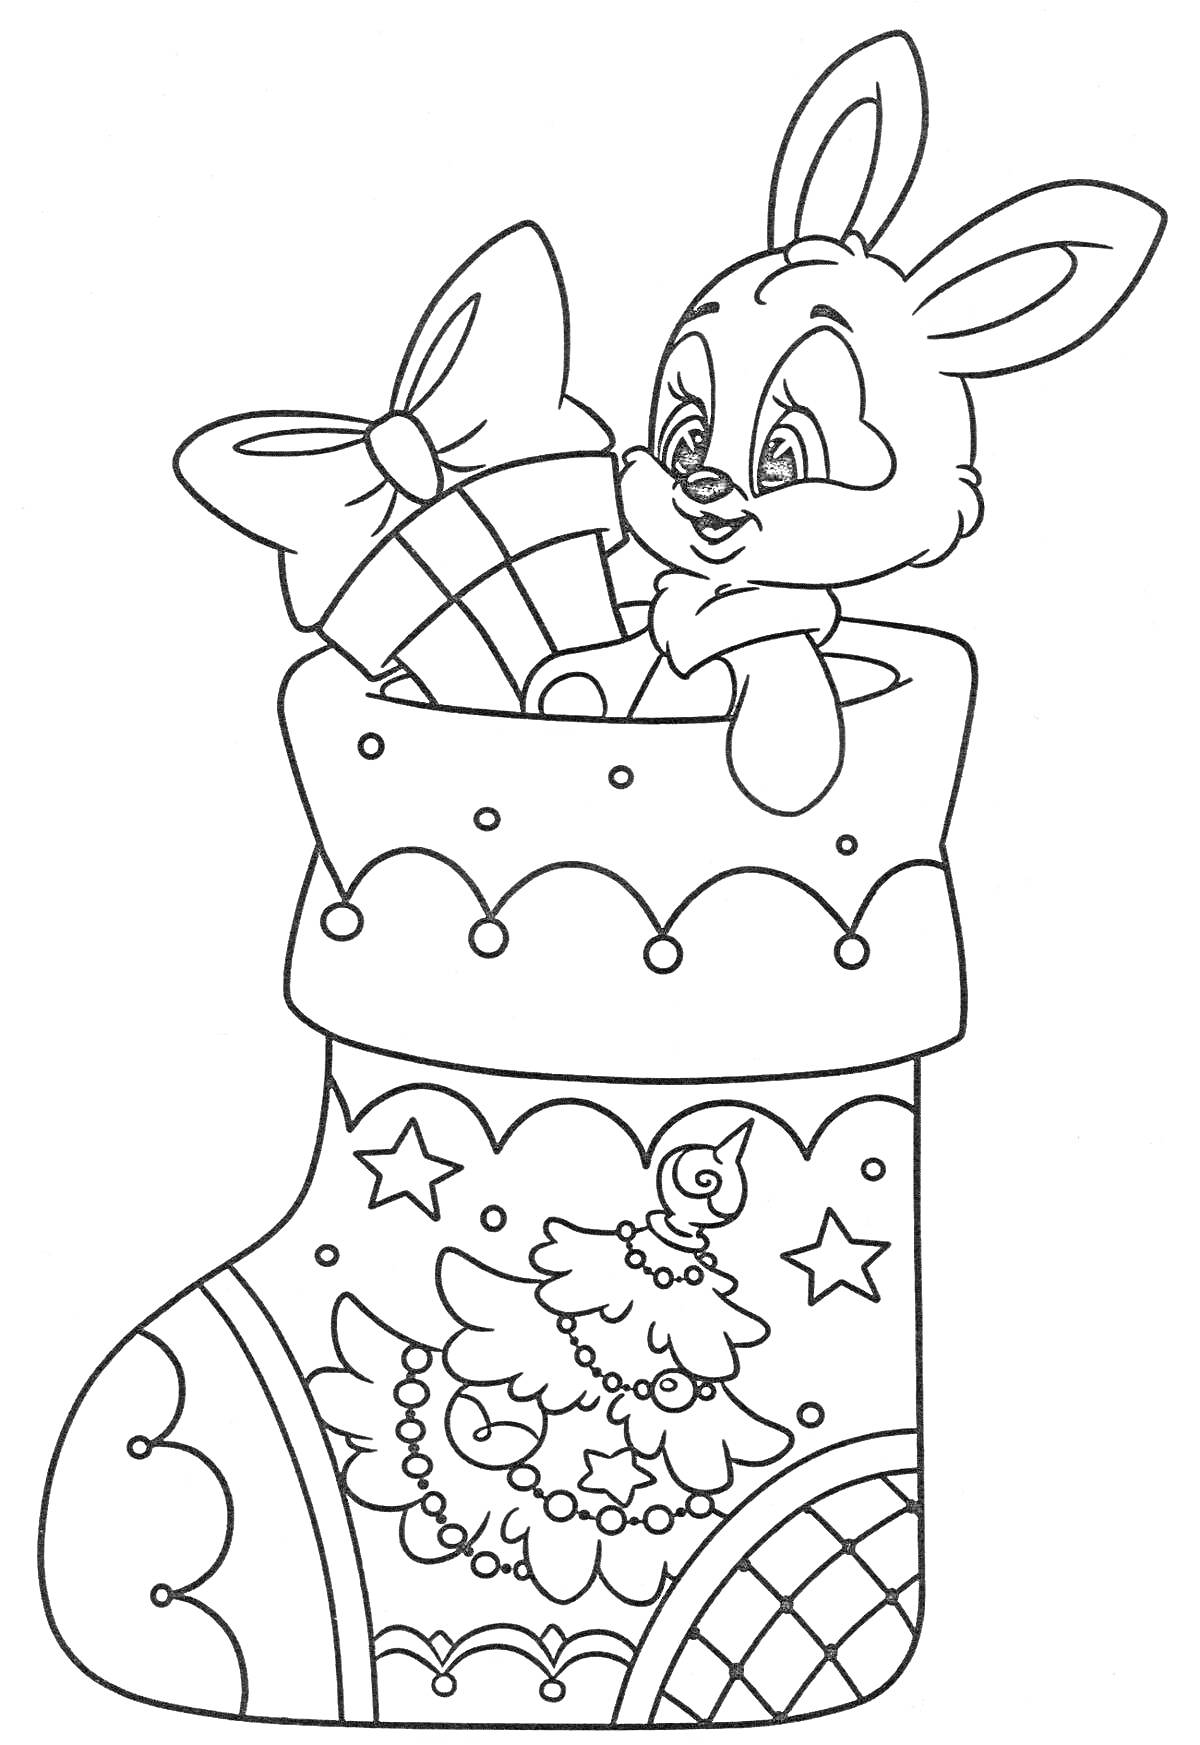 Кролик в новогоднем сапожке с подарками, украшенном ёлкой и звёздами